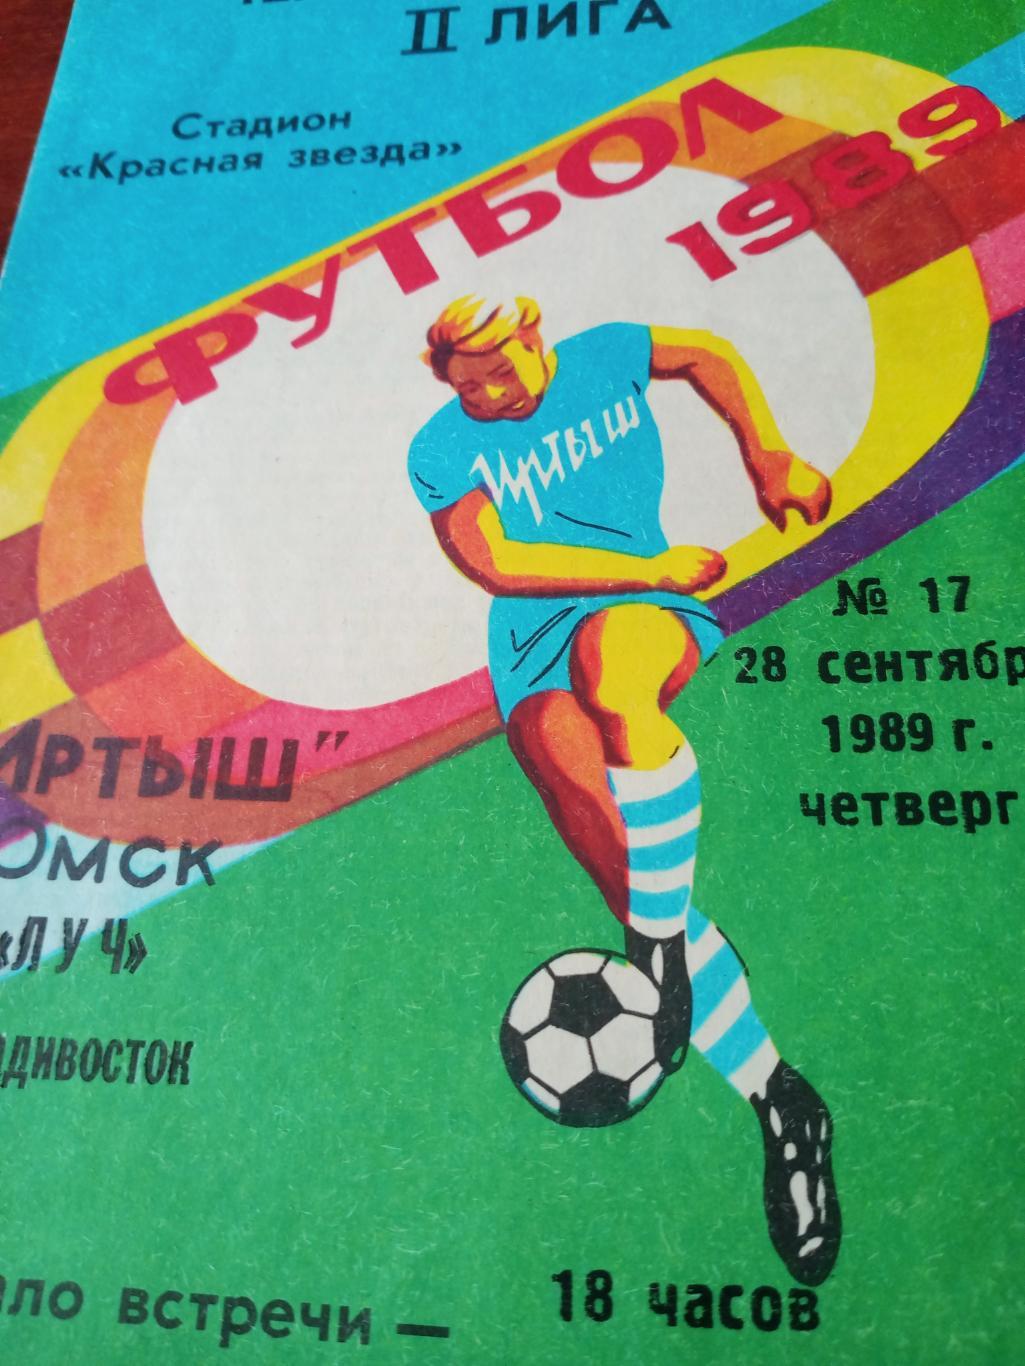 Иртыш Омск - Луч Владивосток. 28 сентября 1989 год